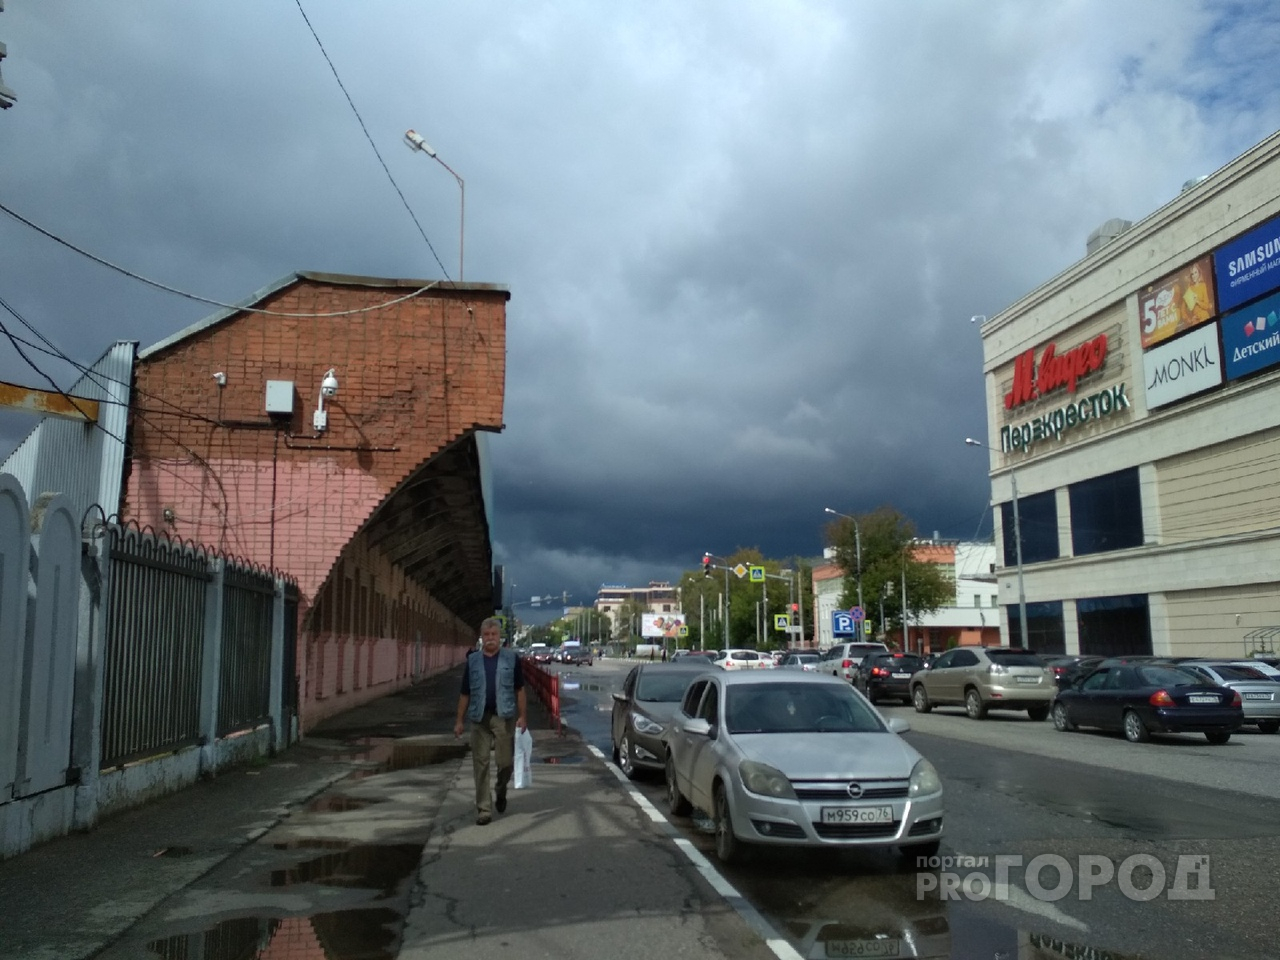 Шторм повалит деревья и разрушит дома: экстренное предупреждение от МЧС Ярославля